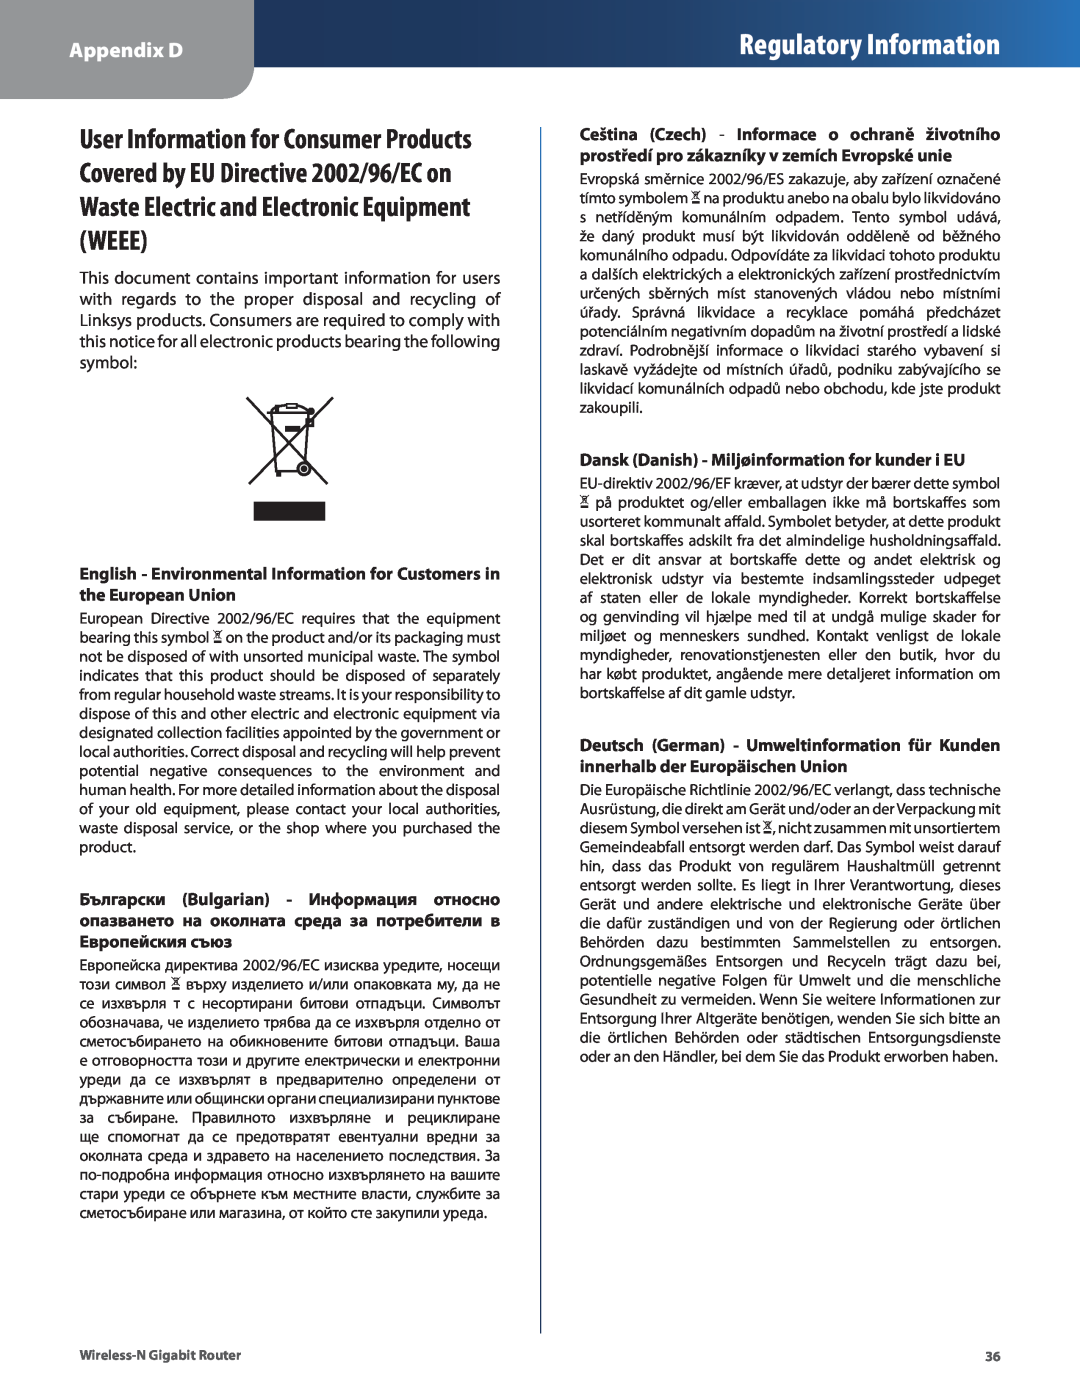 Linksys WRT310N manual Regulatory Information, Appendix D, Dansk Danish - Miljøinformation for kunder i EU 